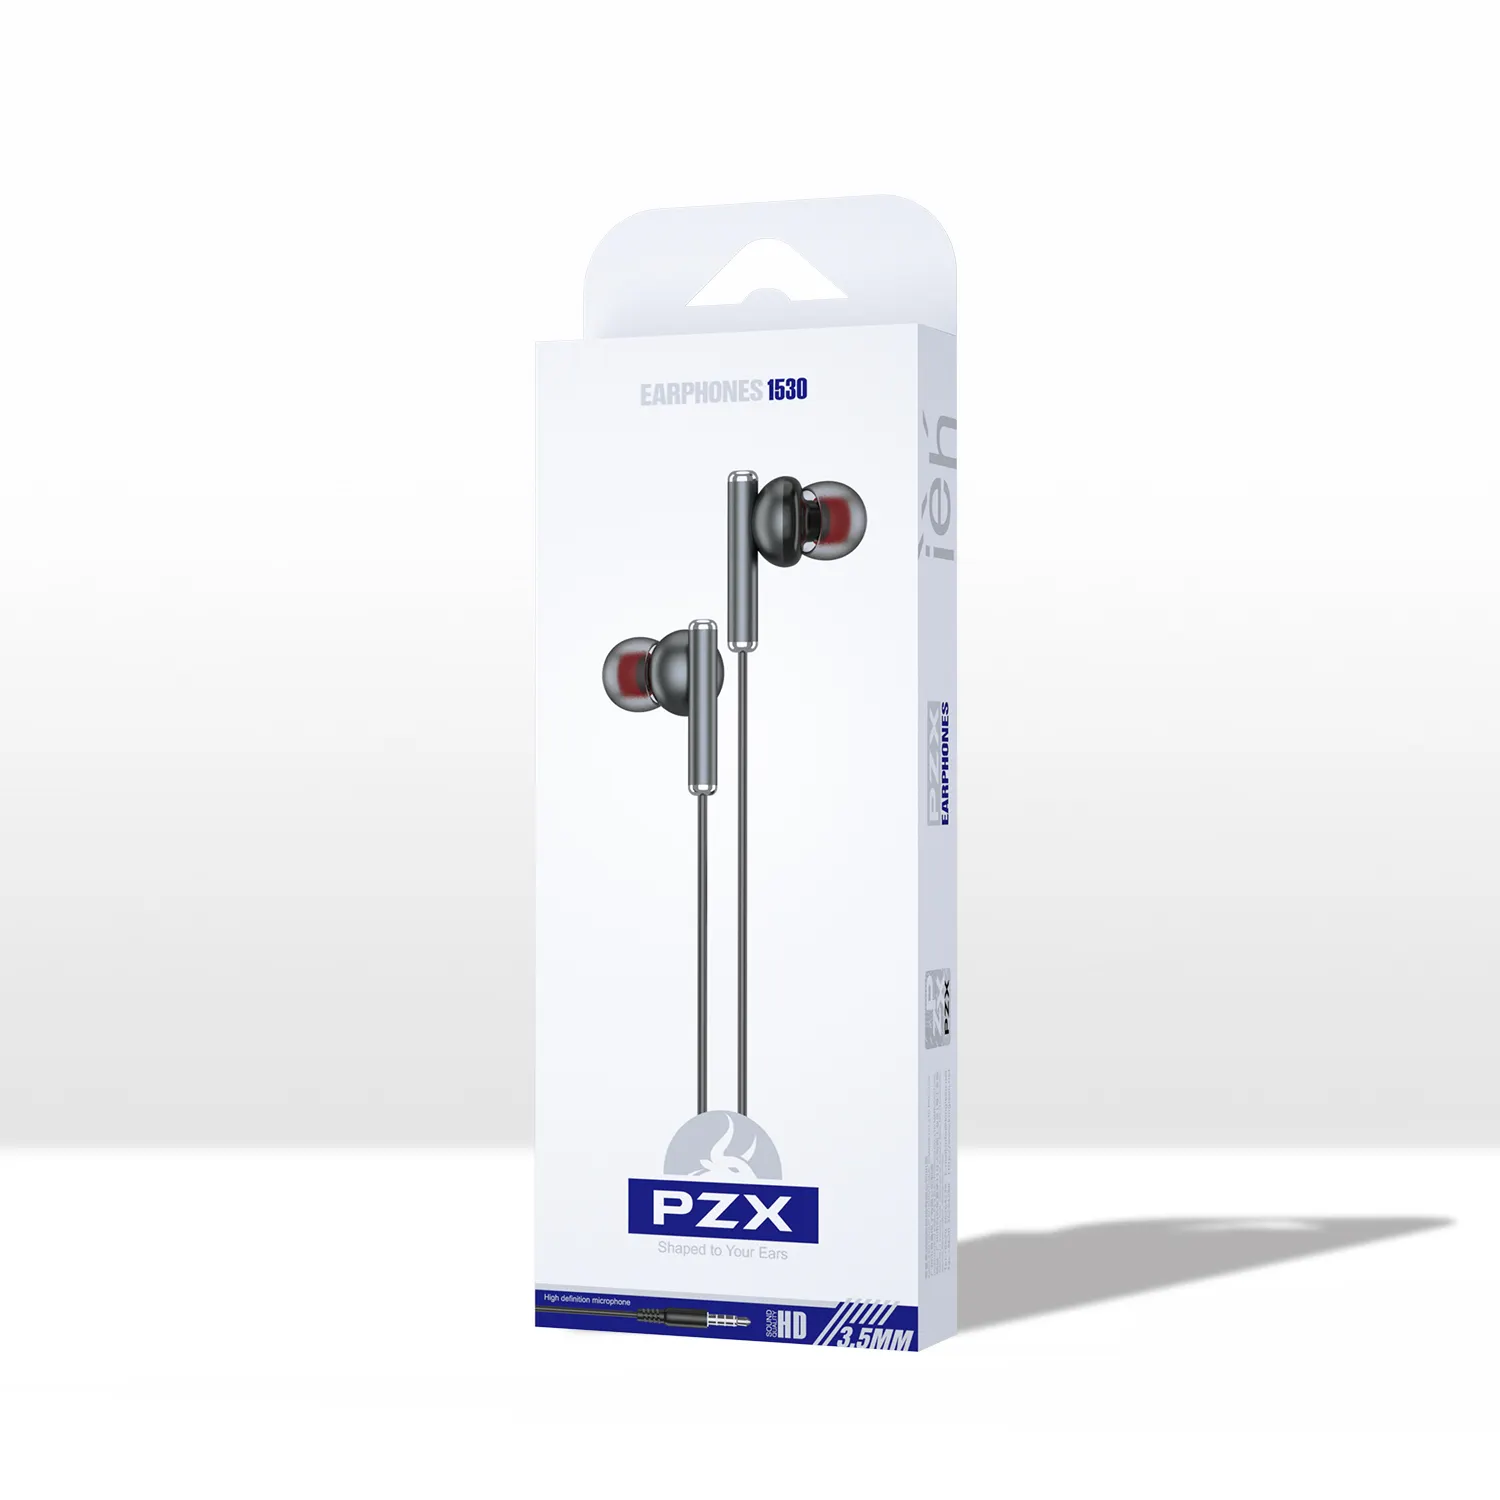 PZX 1530 באיכות גבוהה אוניברסלי נייד הטובה ביותר הדיבורית סטריאו קול נייד טלפונים מוסיקה 3.5mm el wired אוזניות באוזן עם מיקרופון